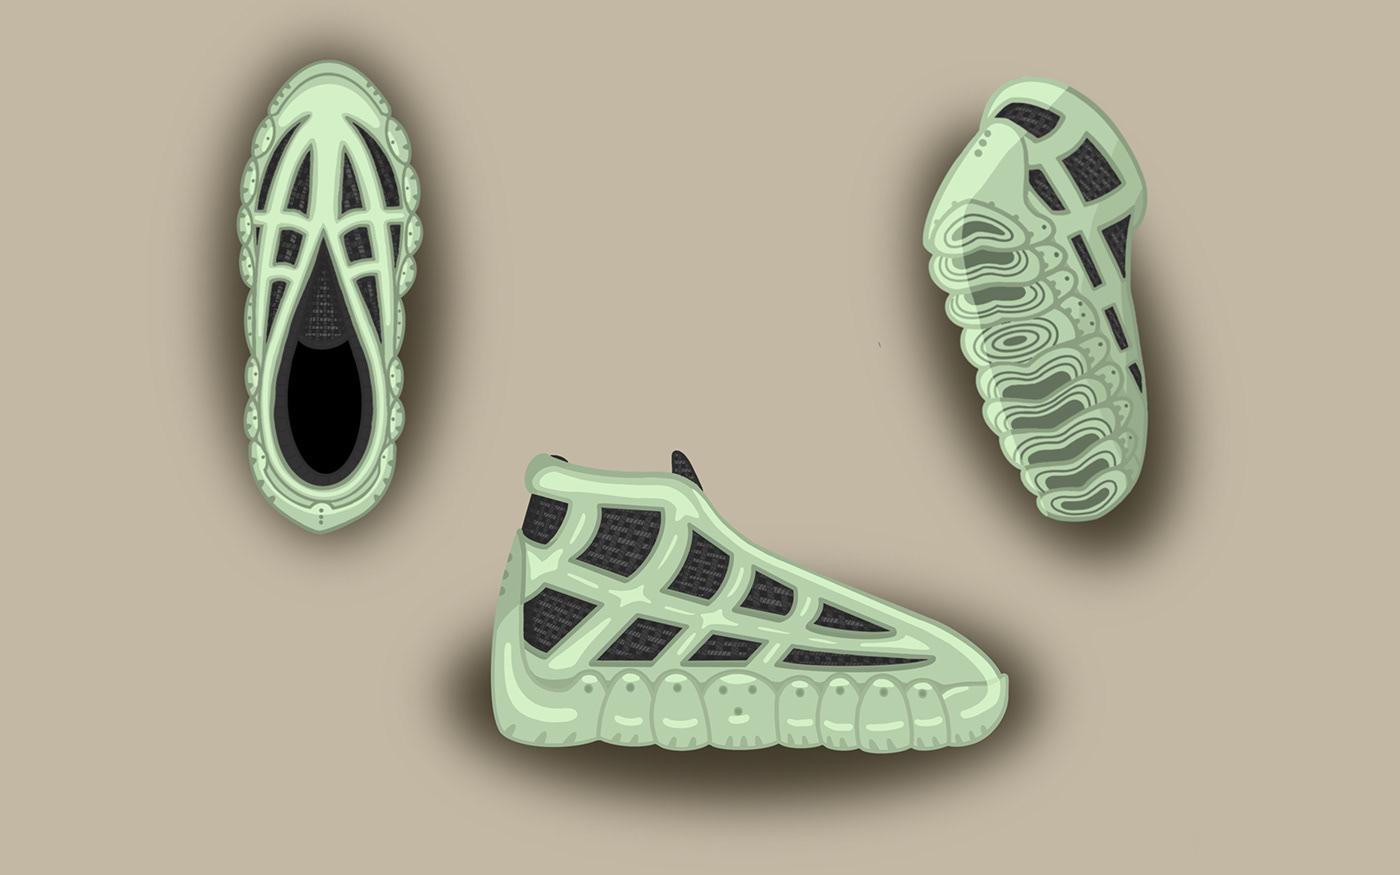 concept concept shoe Foam footwear footwear design footwear development ILLUSTRATION  knit product design  product development product sketch shoe design shoe sketch sketch sneaker Sneaker Design